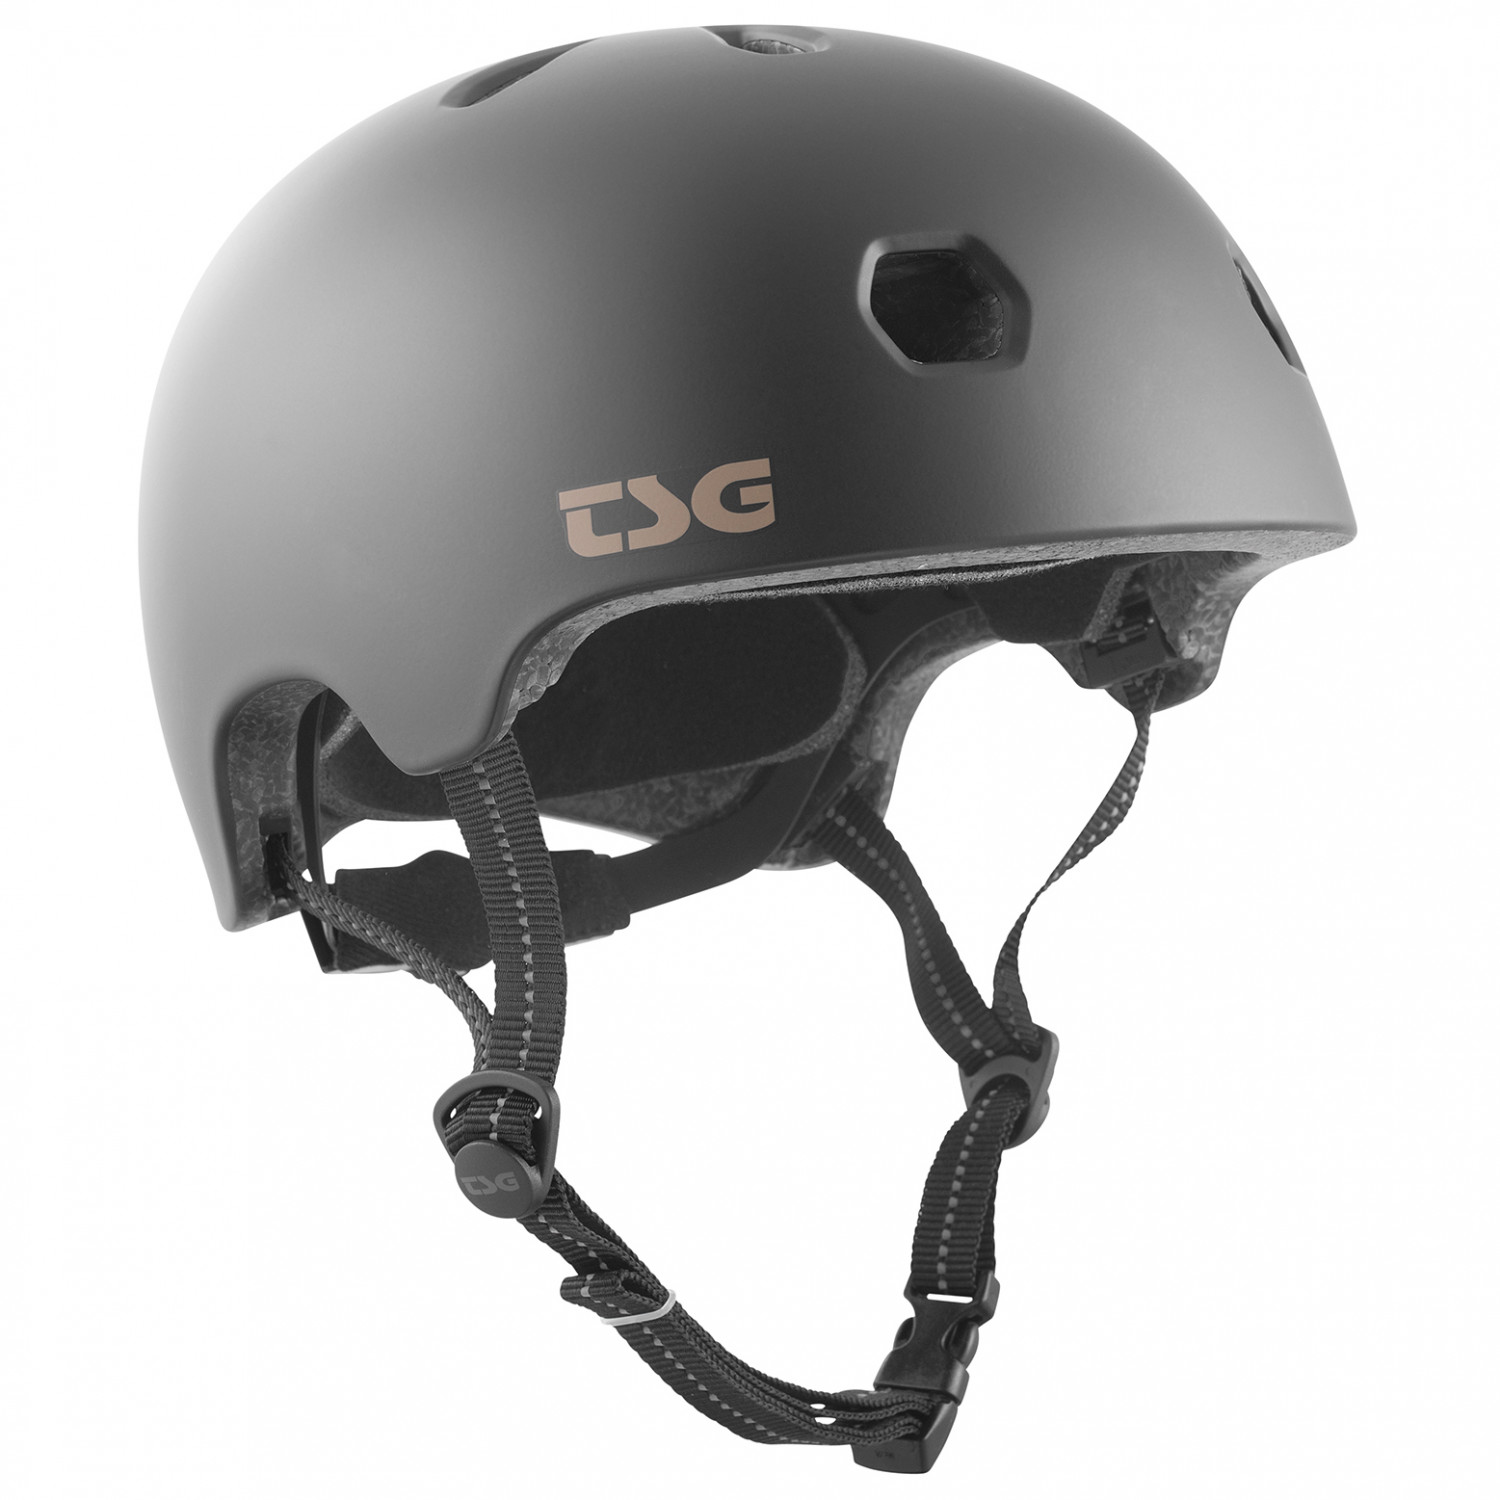 цена Велосипедный шлем Tsg Meta Solid Color, цвет Satin Black